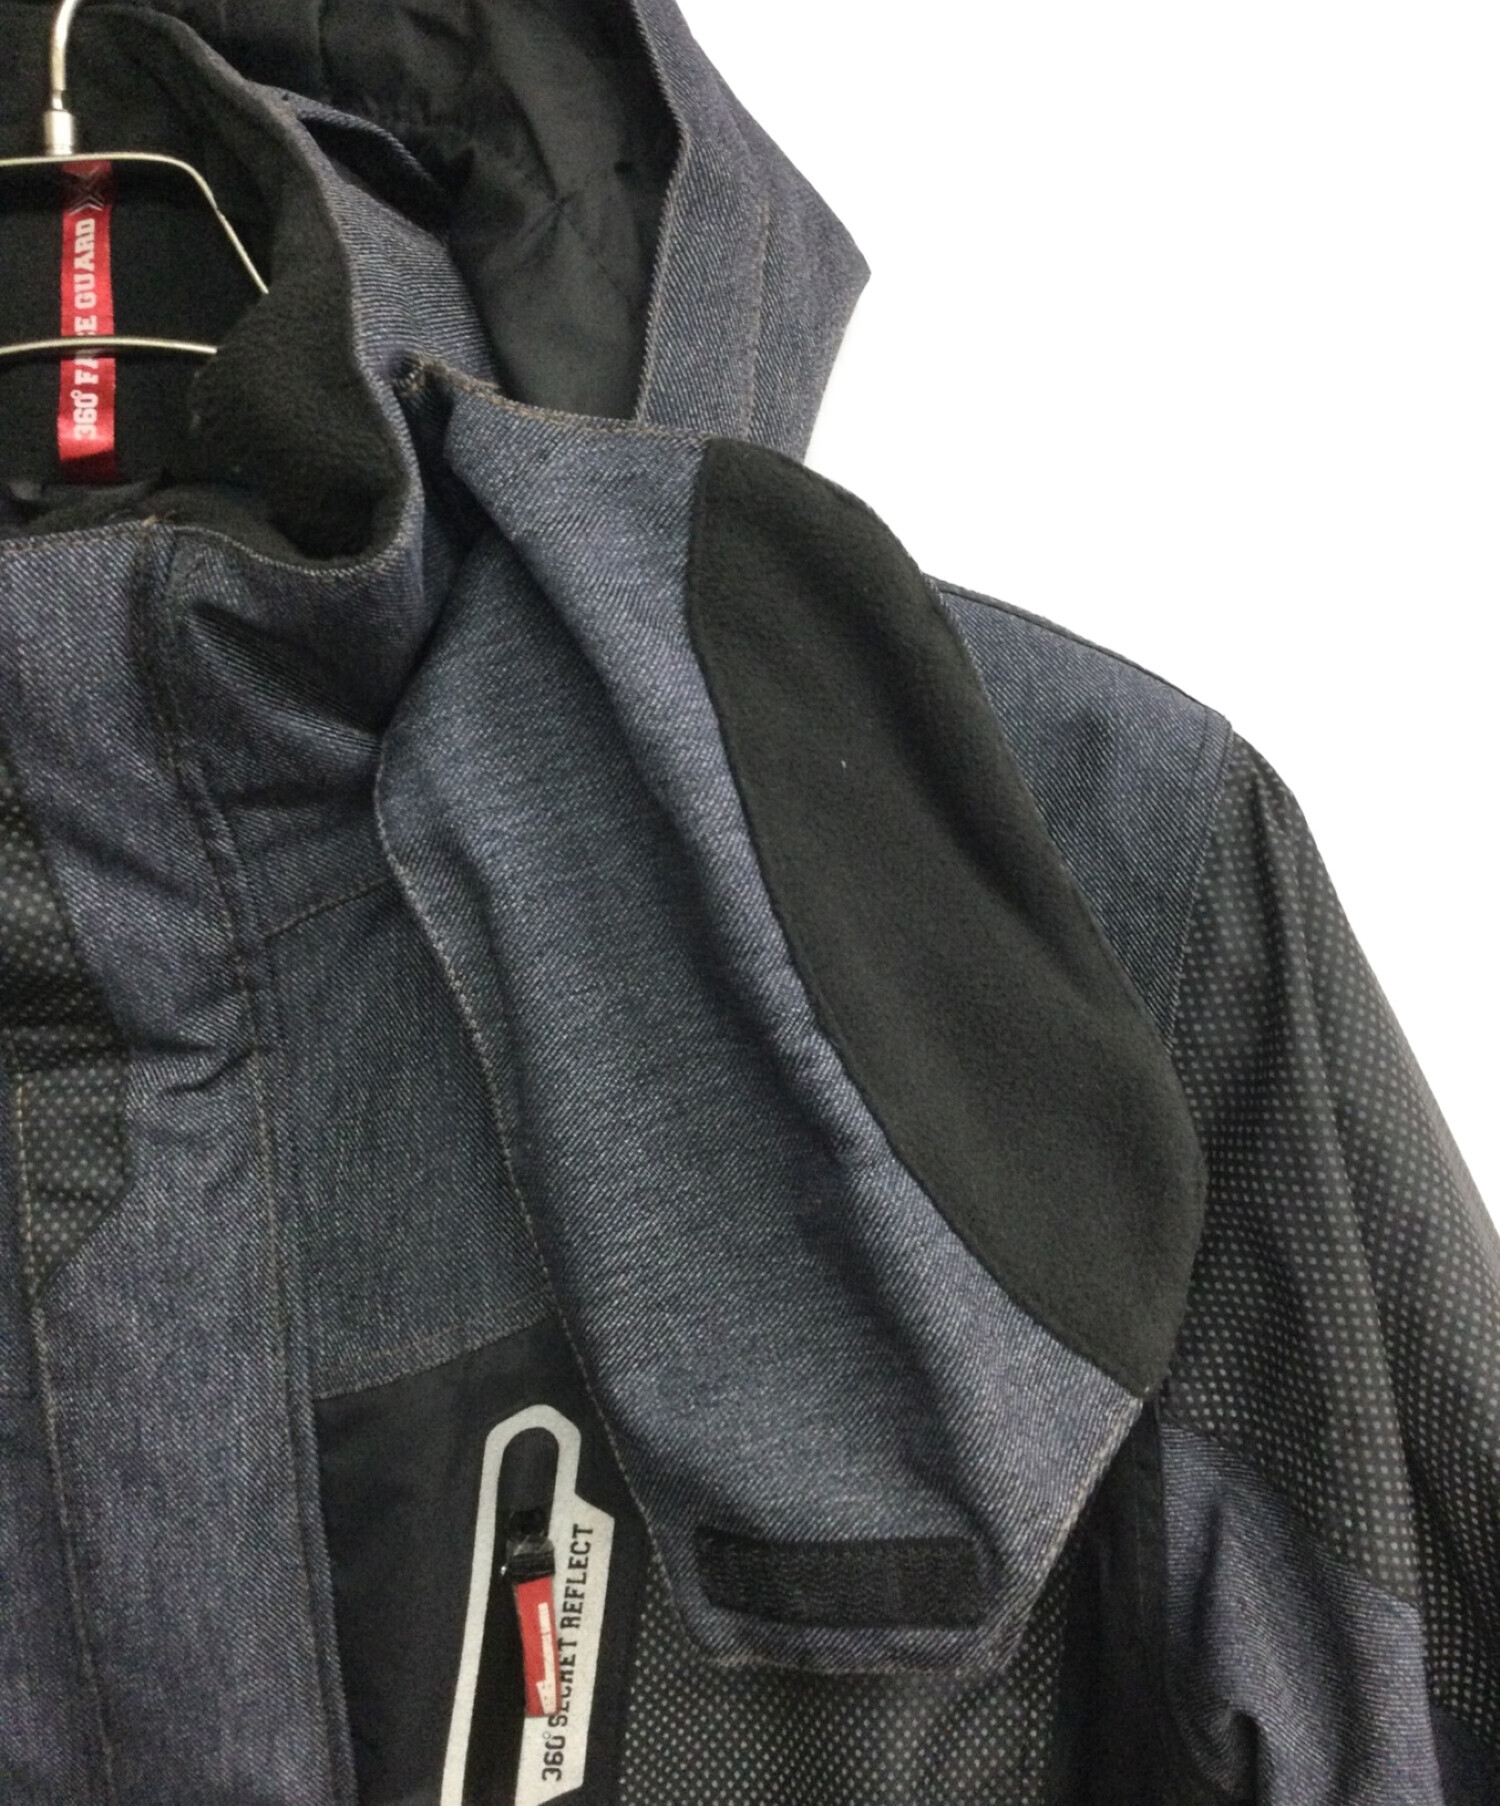 WORKMAN (ワークマン) イージス360°リフレクト 透湿防水防寒DENIMジャケット ネイビー×ブラック サイズ:L